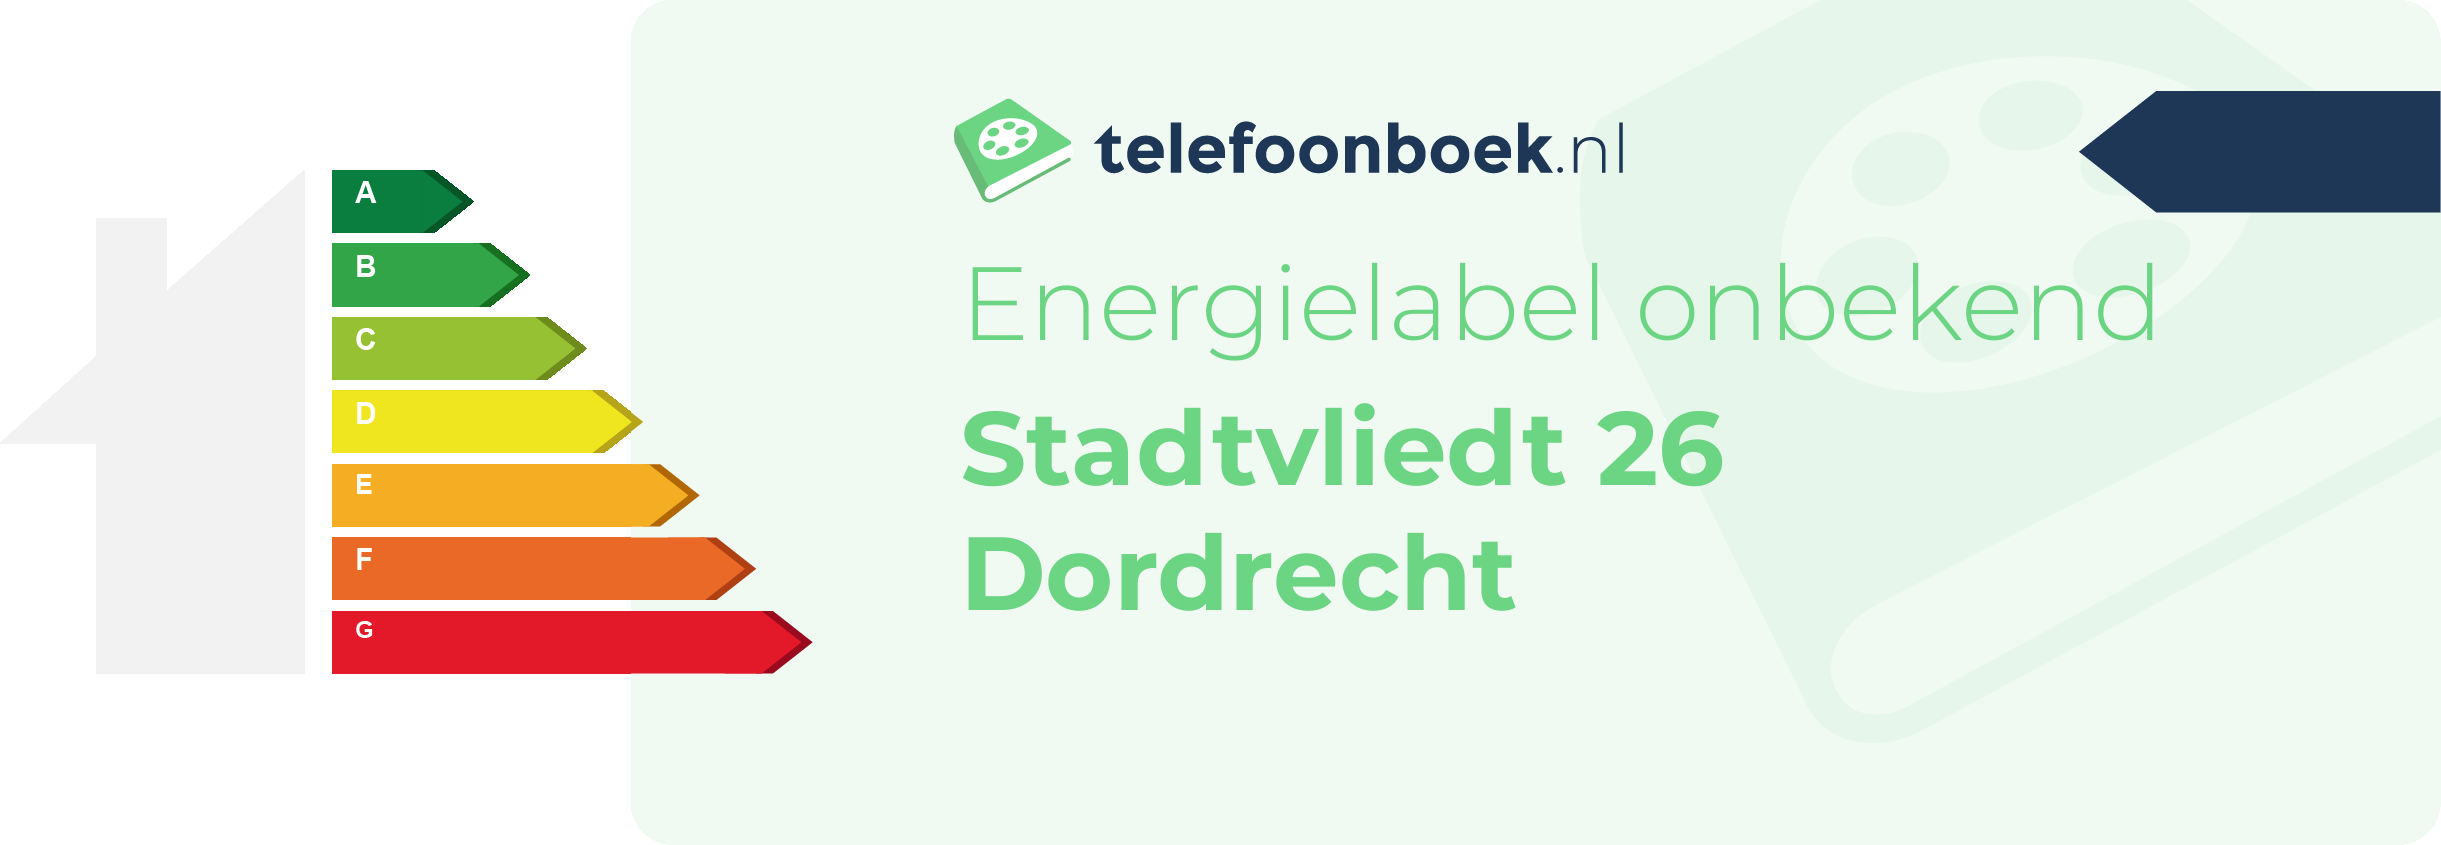 Energielabel Stadtvliedt 26 Dordrecht